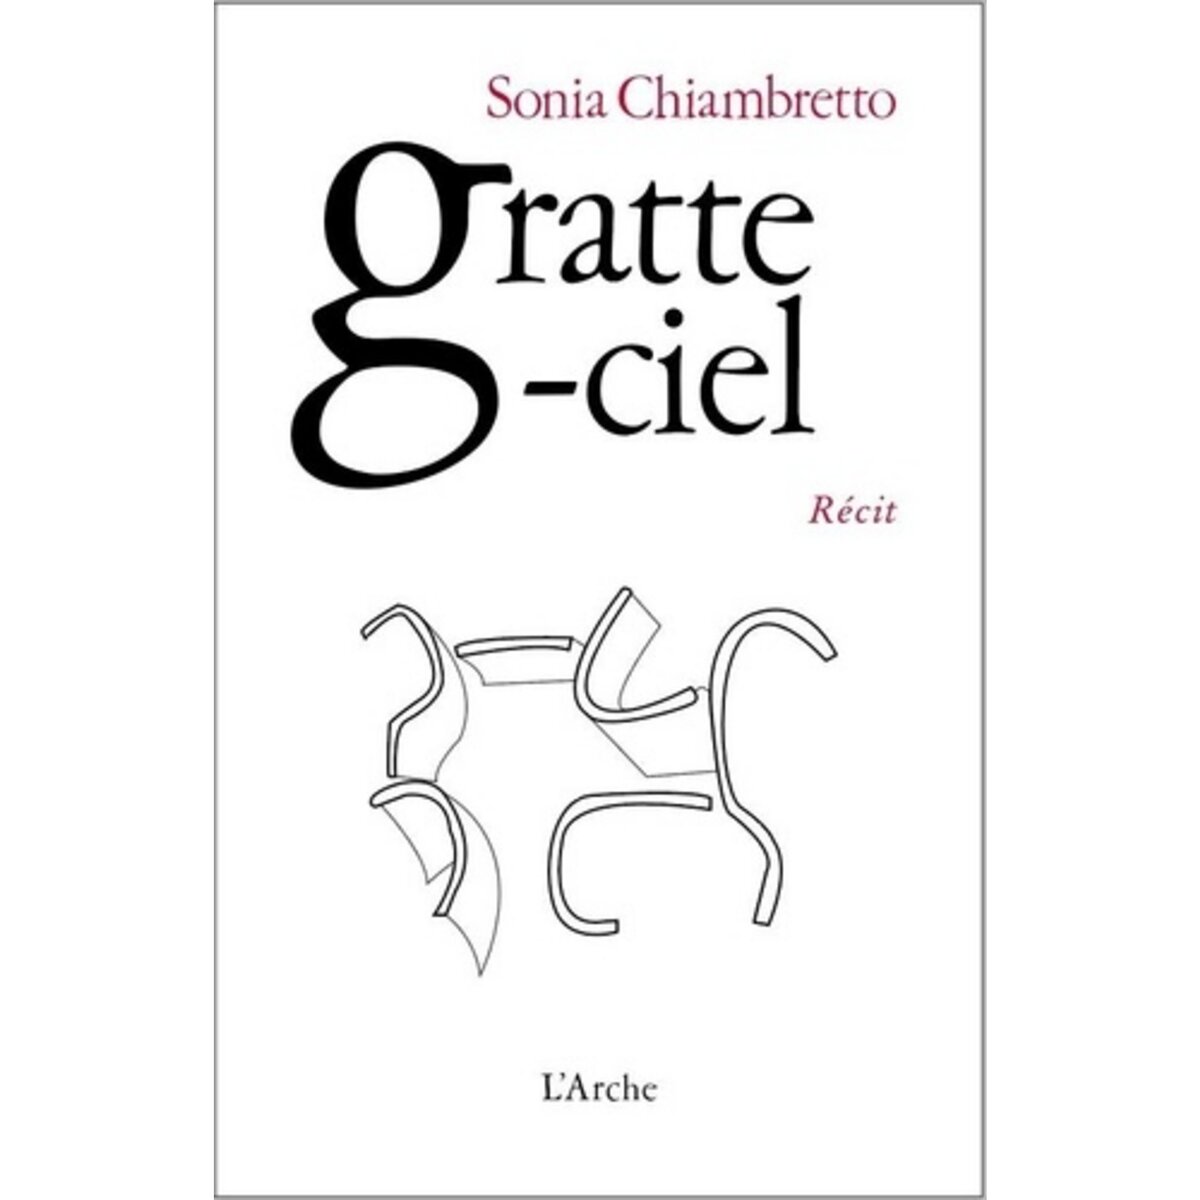  GRATTE-CIEL, Chiambretto Sonia